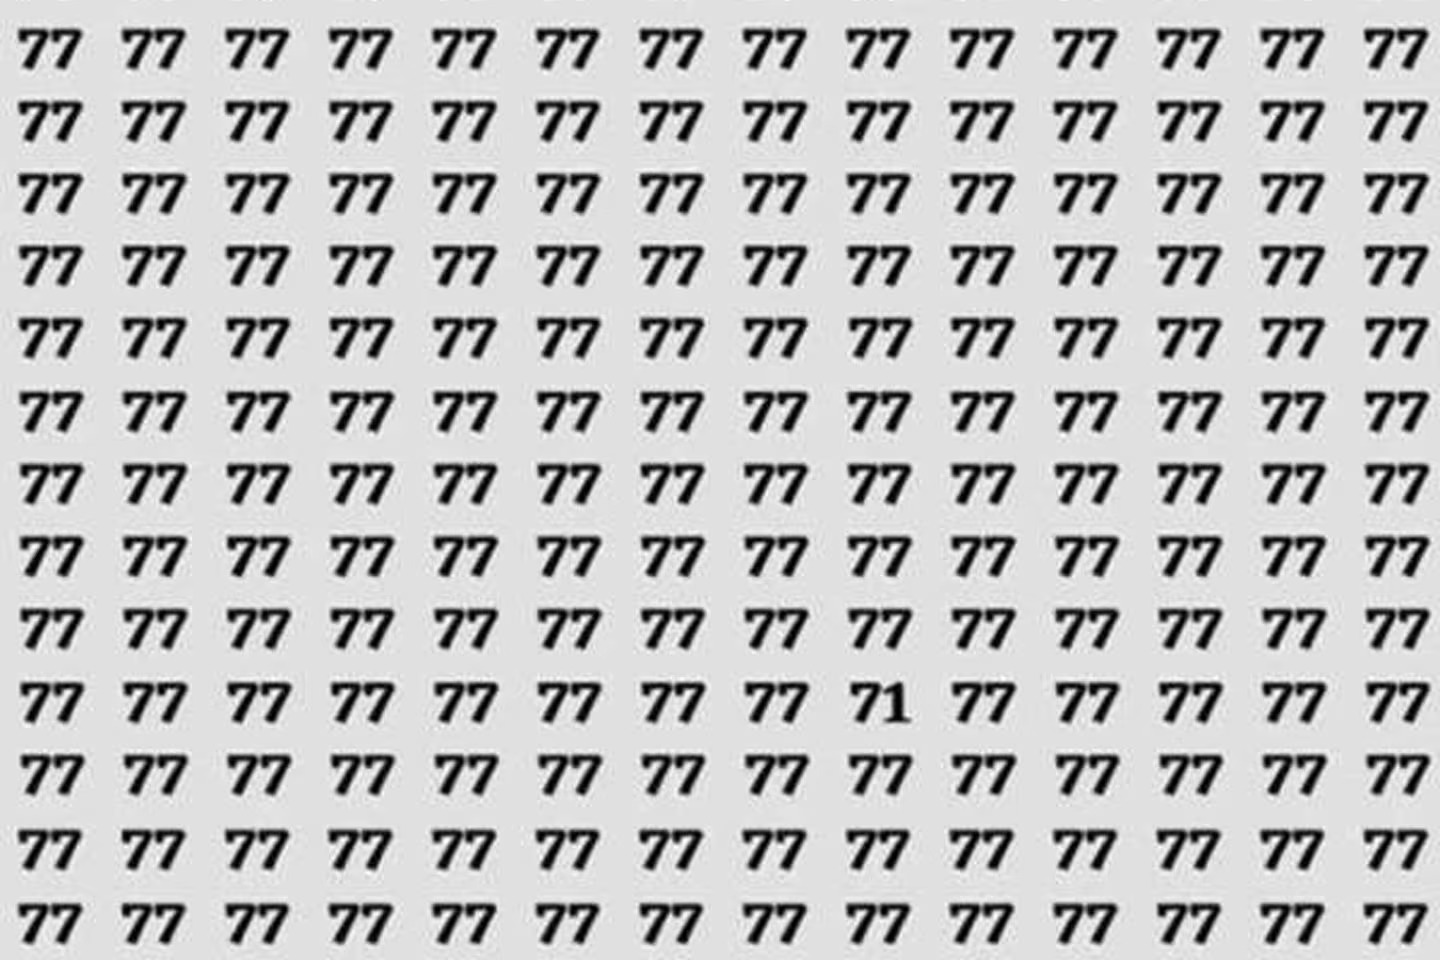 Teste visual: encontre o número diferente de 77 nesta imagem (só os gênios conseguem)